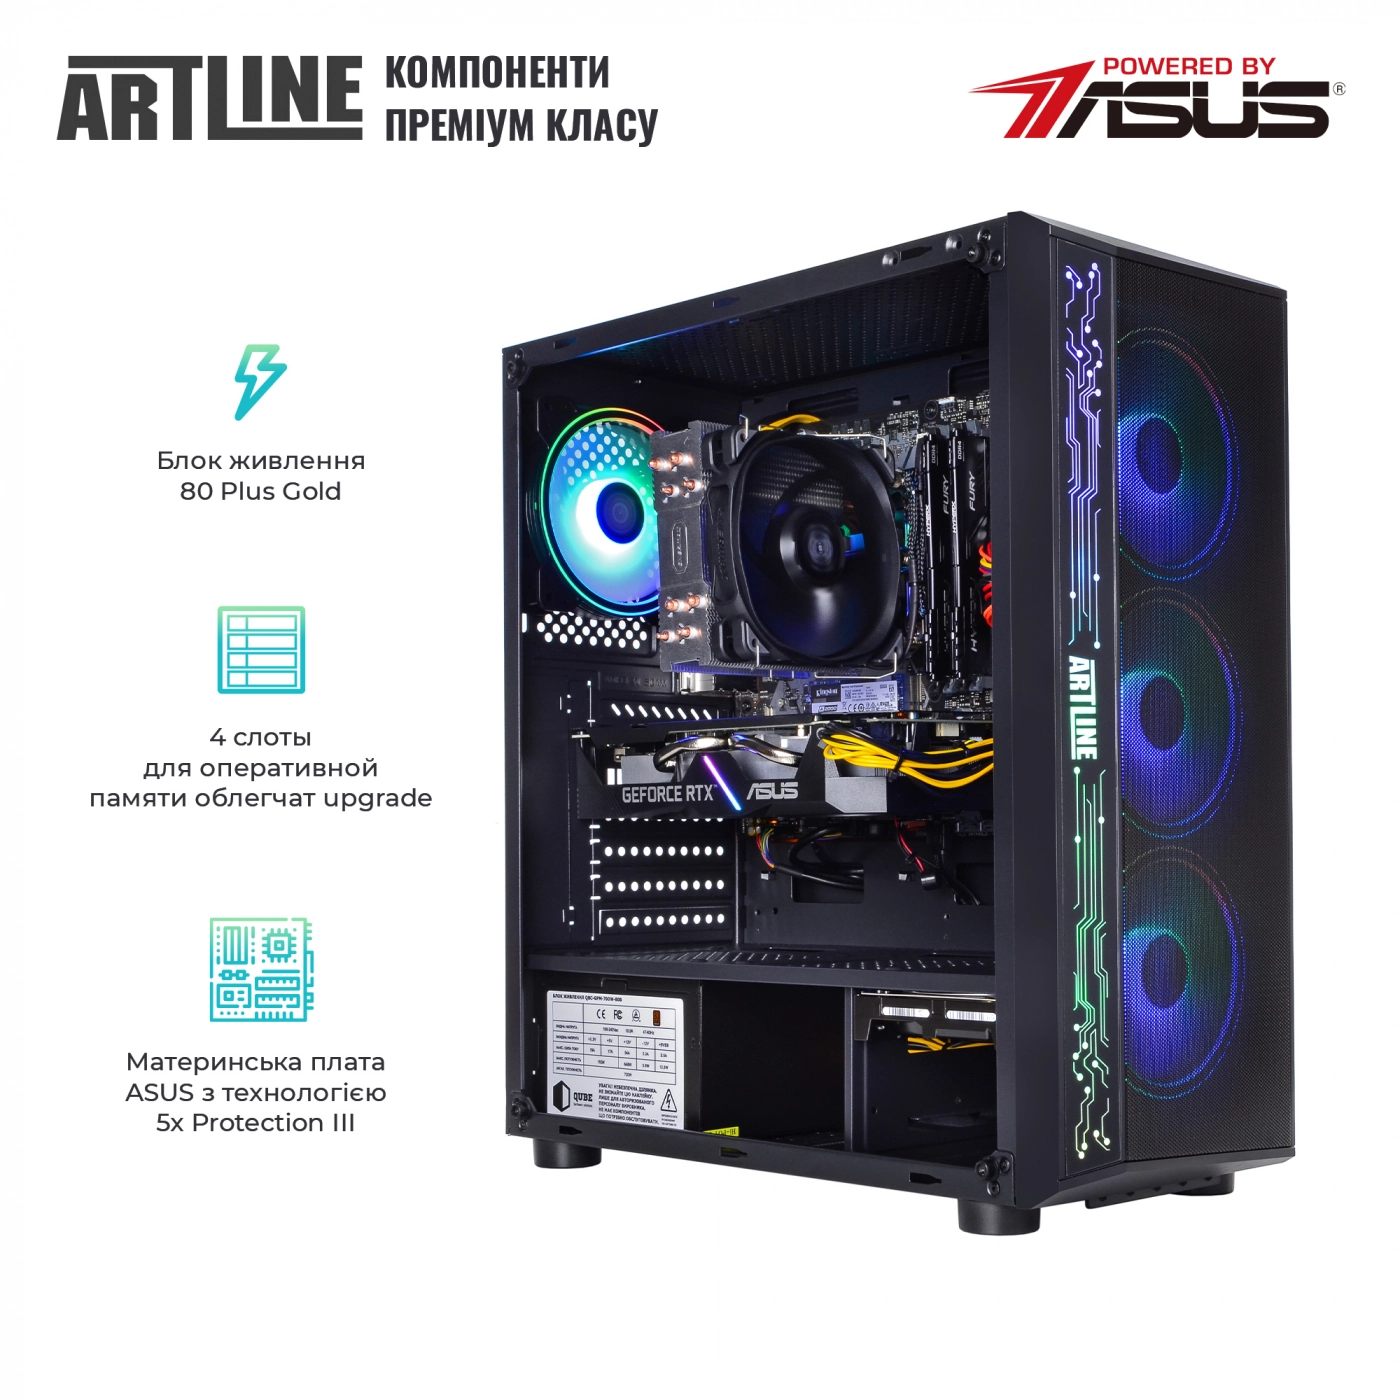 Купить Компьютер ARTLINE Gaming X68v21 - фото 2